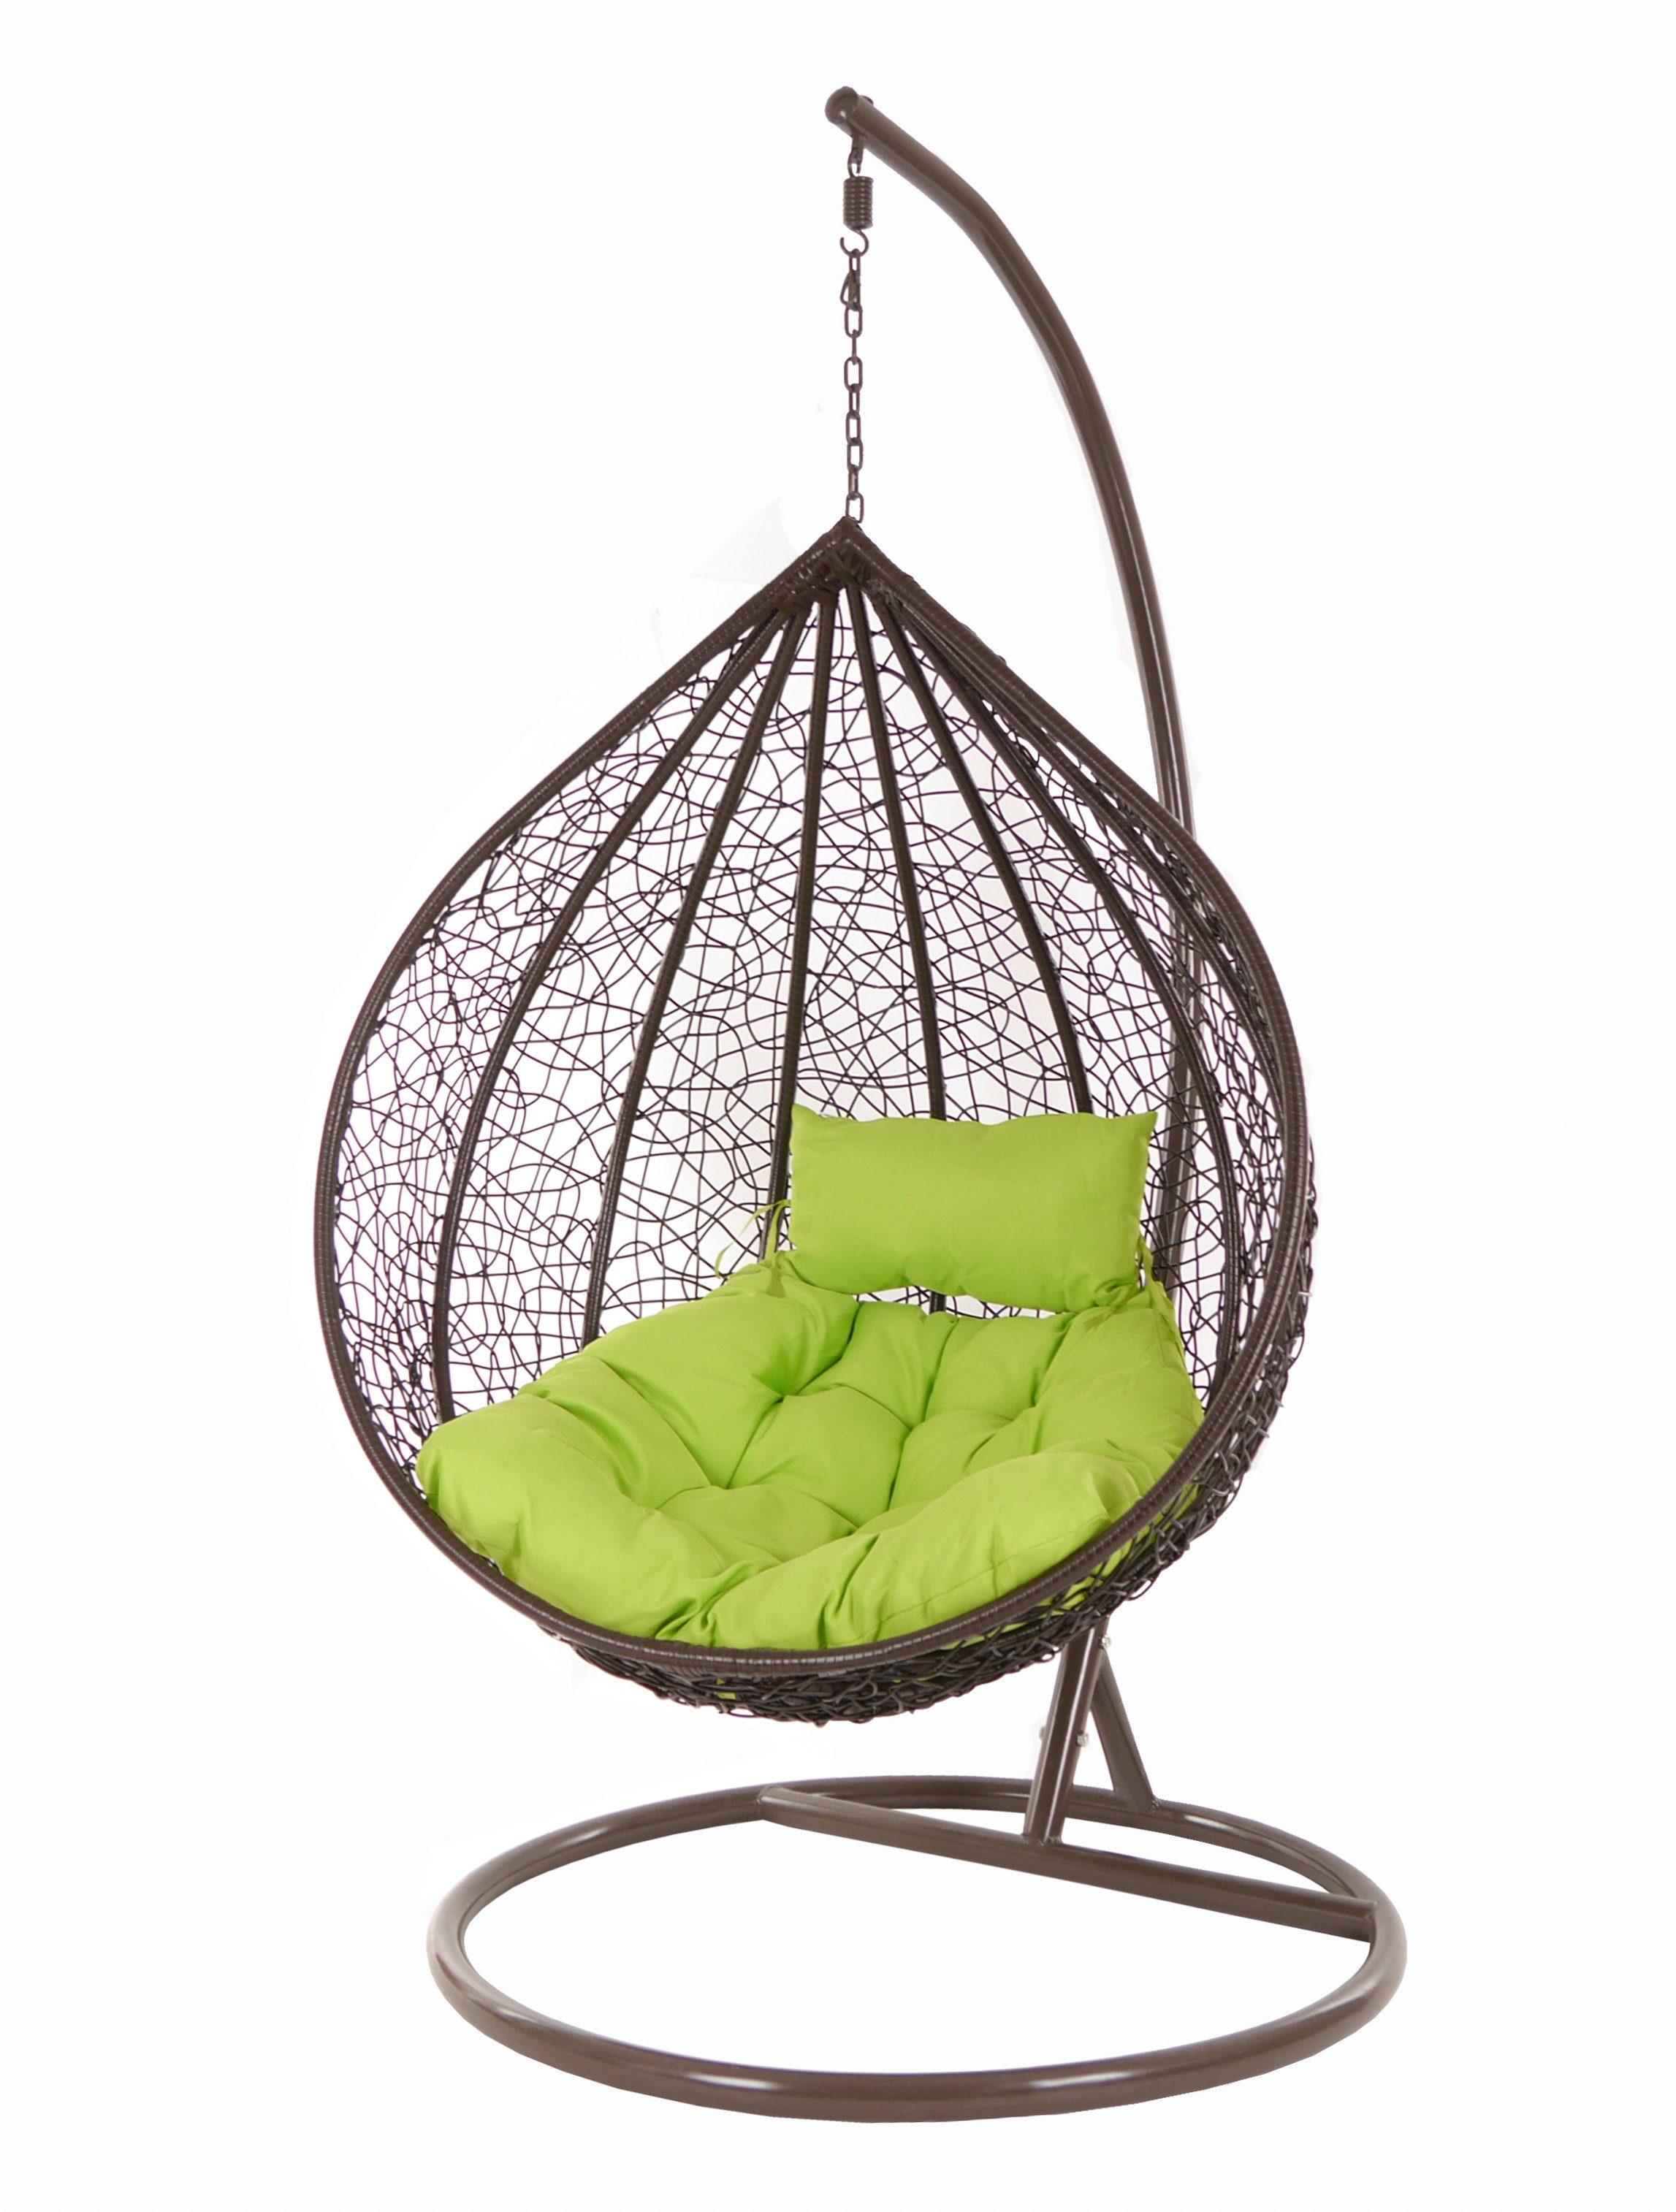 KIDEO Hängesessel Hängesessel MANACOR darkbrown, Swing Chair, Hängesessel mit Gestell und Kissen, dunkelbraun, Loungemöbel apfelgrün (6068 apple green)